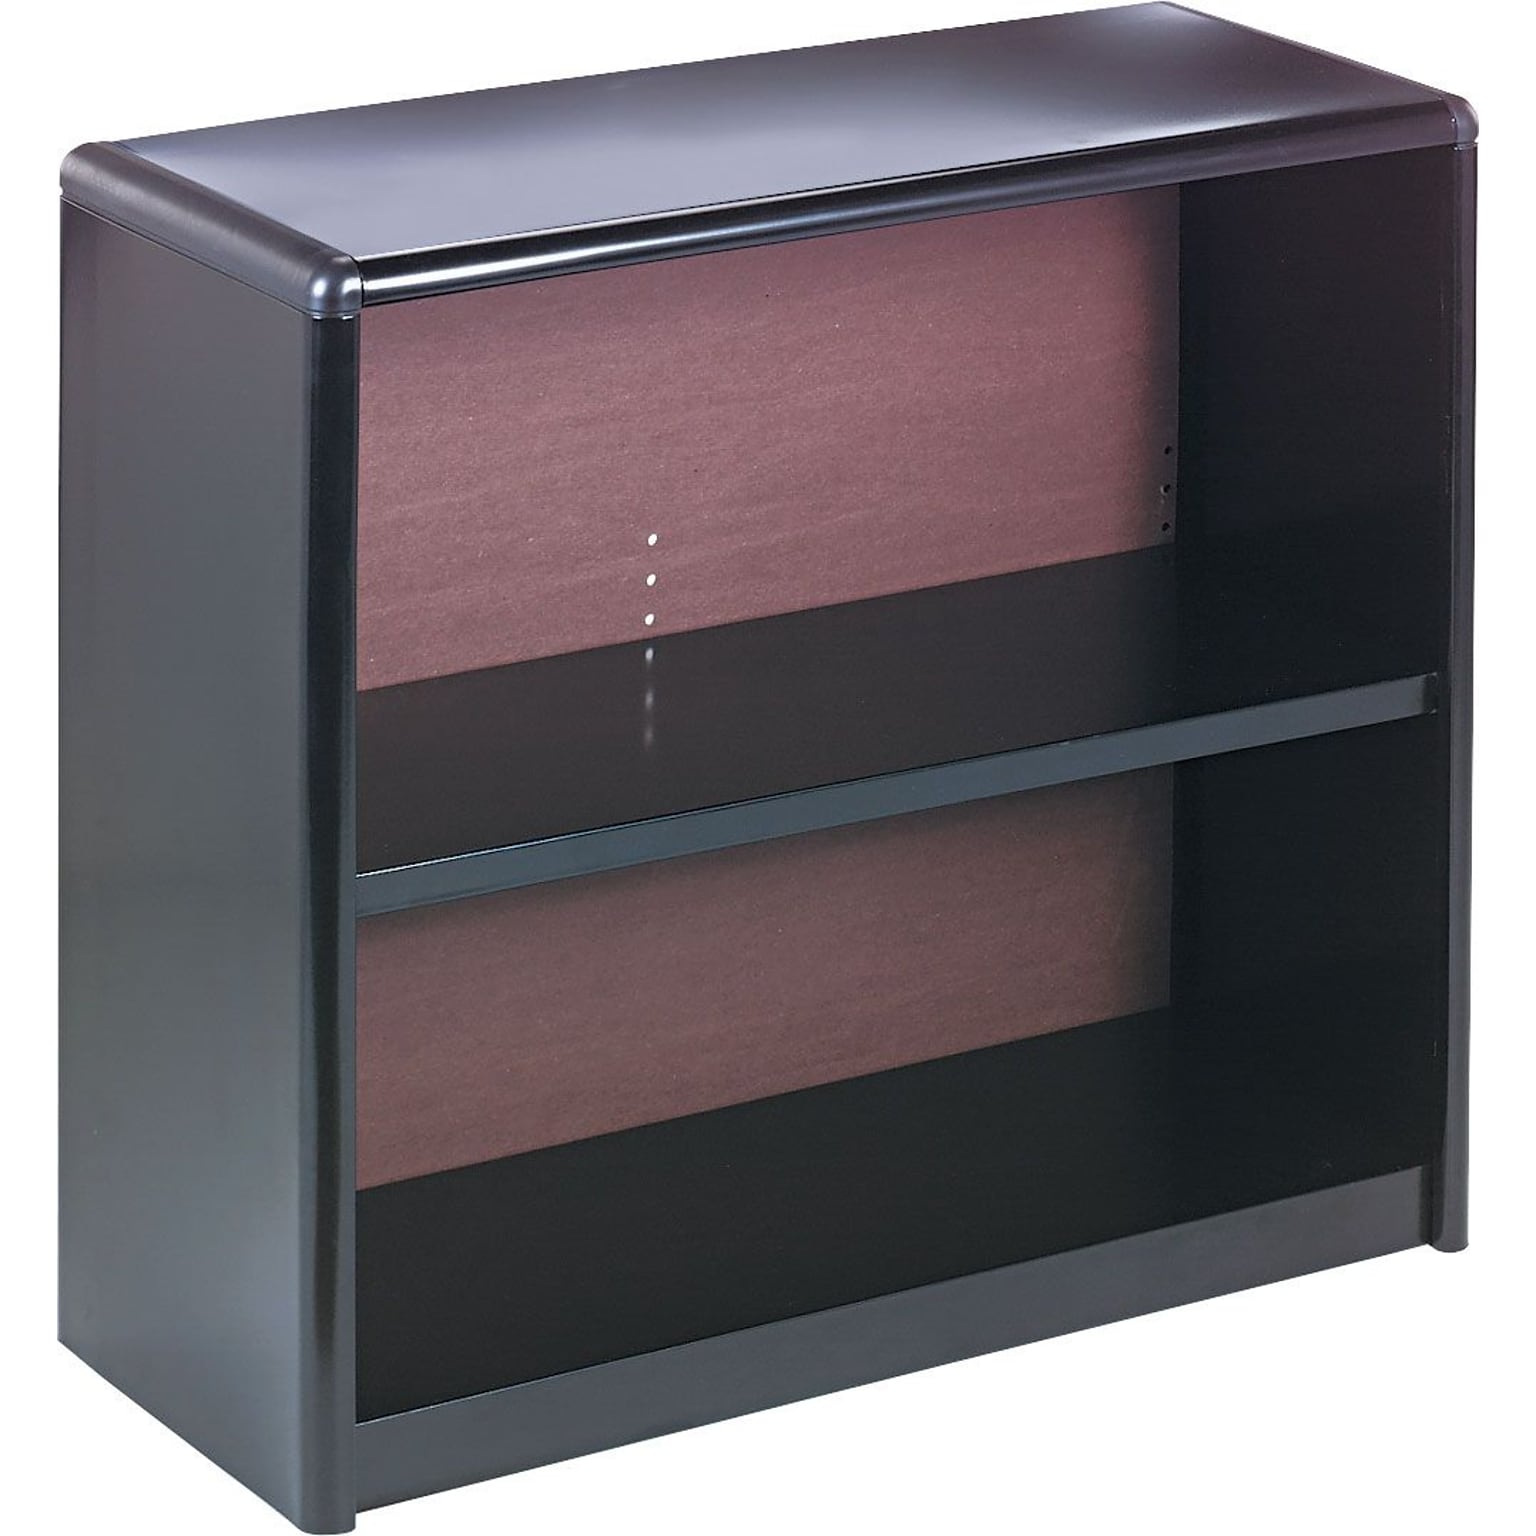 Safco ValueMate Economy 28H 2-Shelf Steel Bookcase, Black (7170BL)